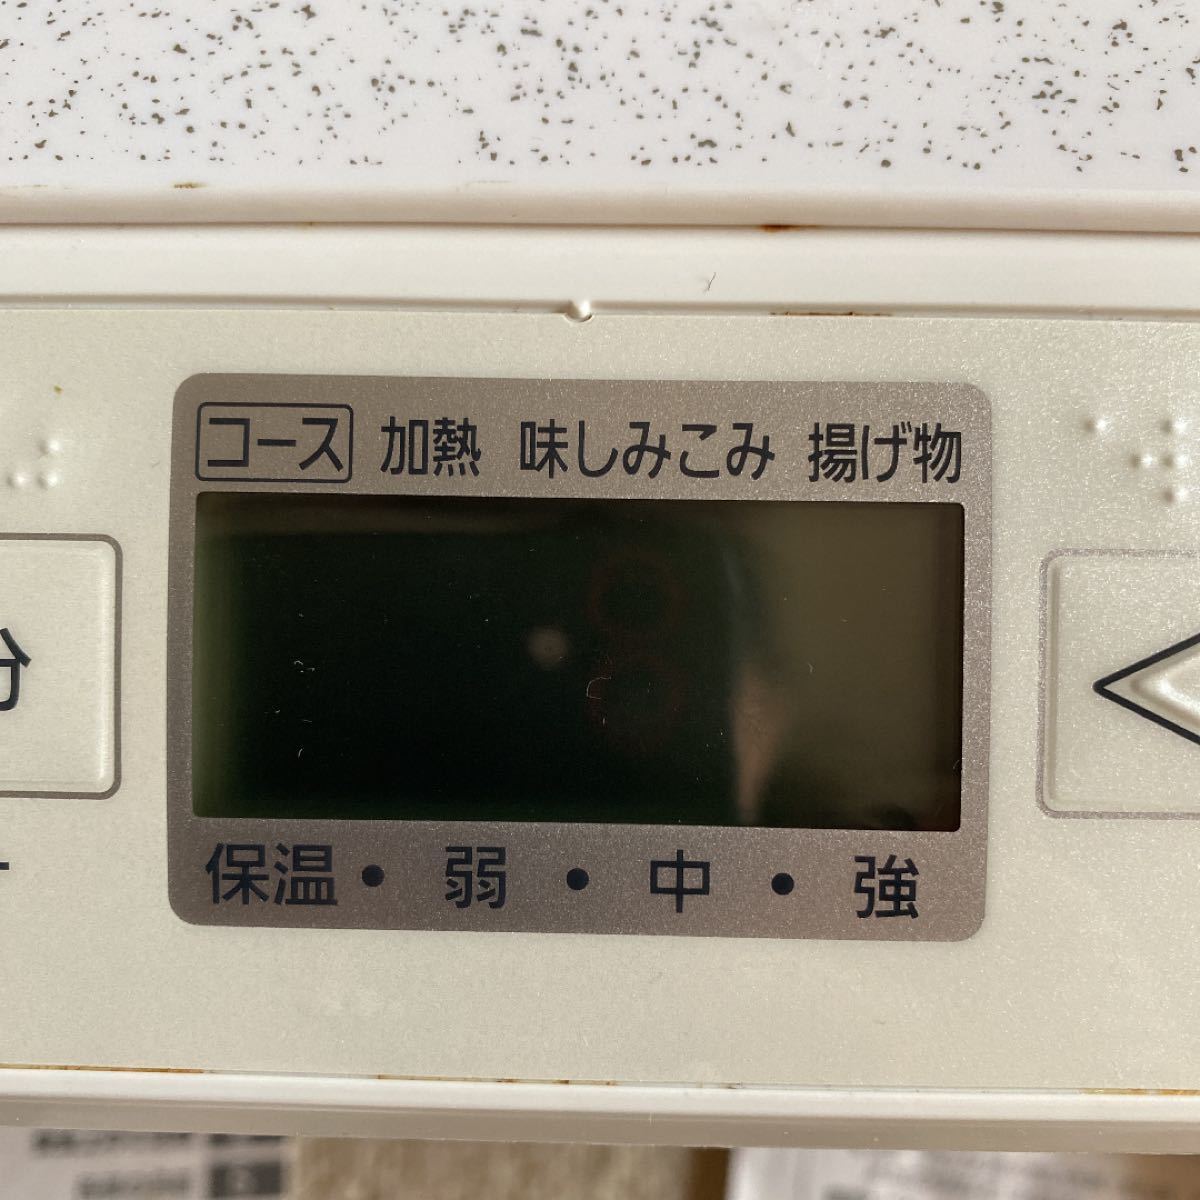 Panasonic 卓上IH調理器11年製日本製